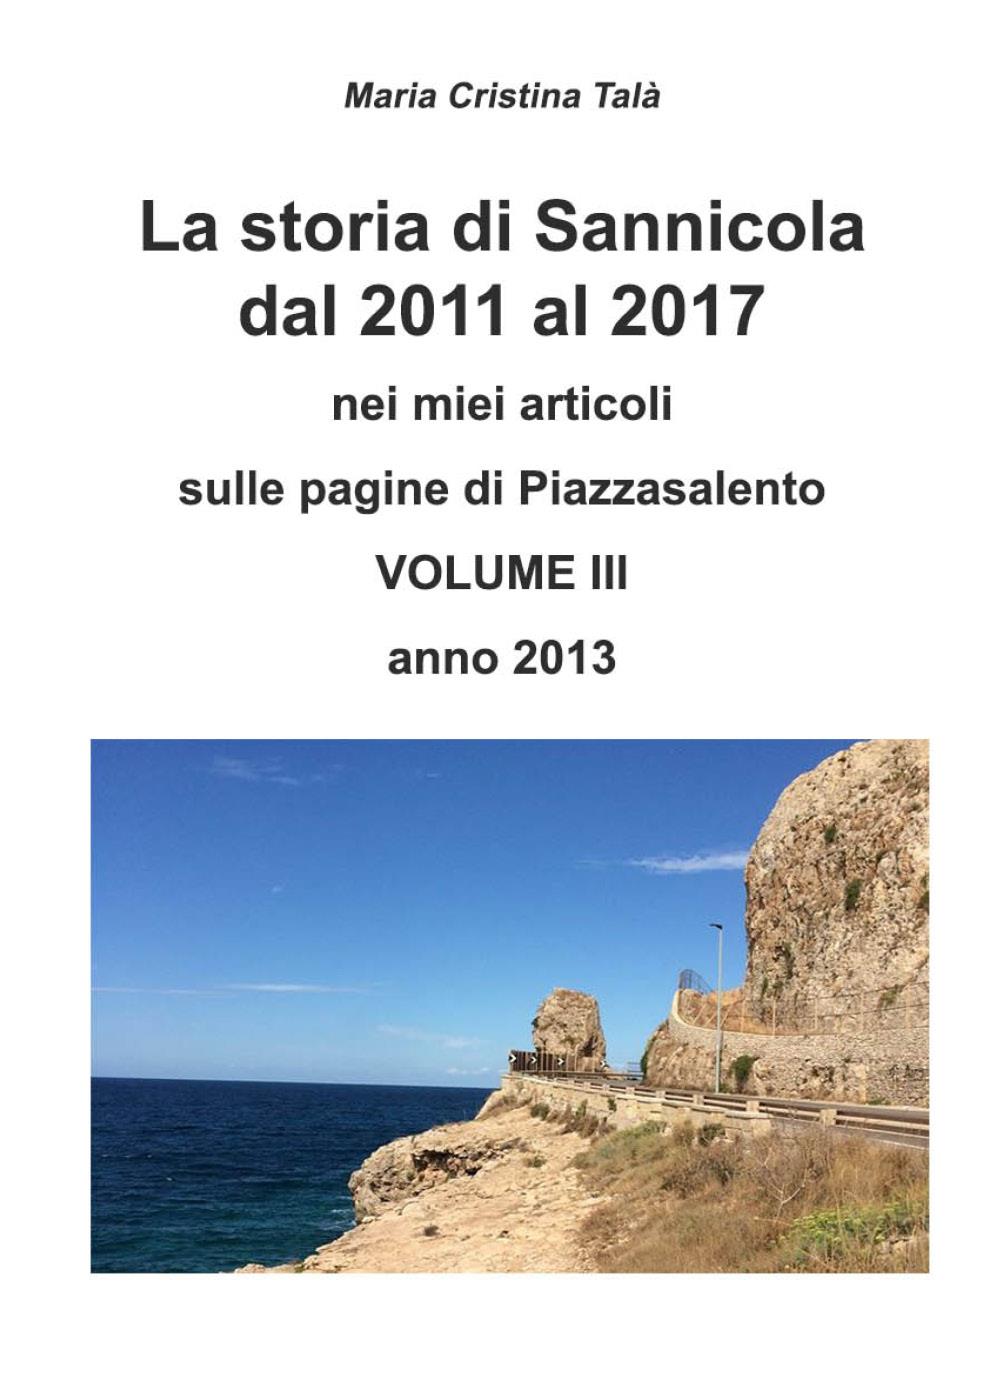 La storia di Sannicola volume III